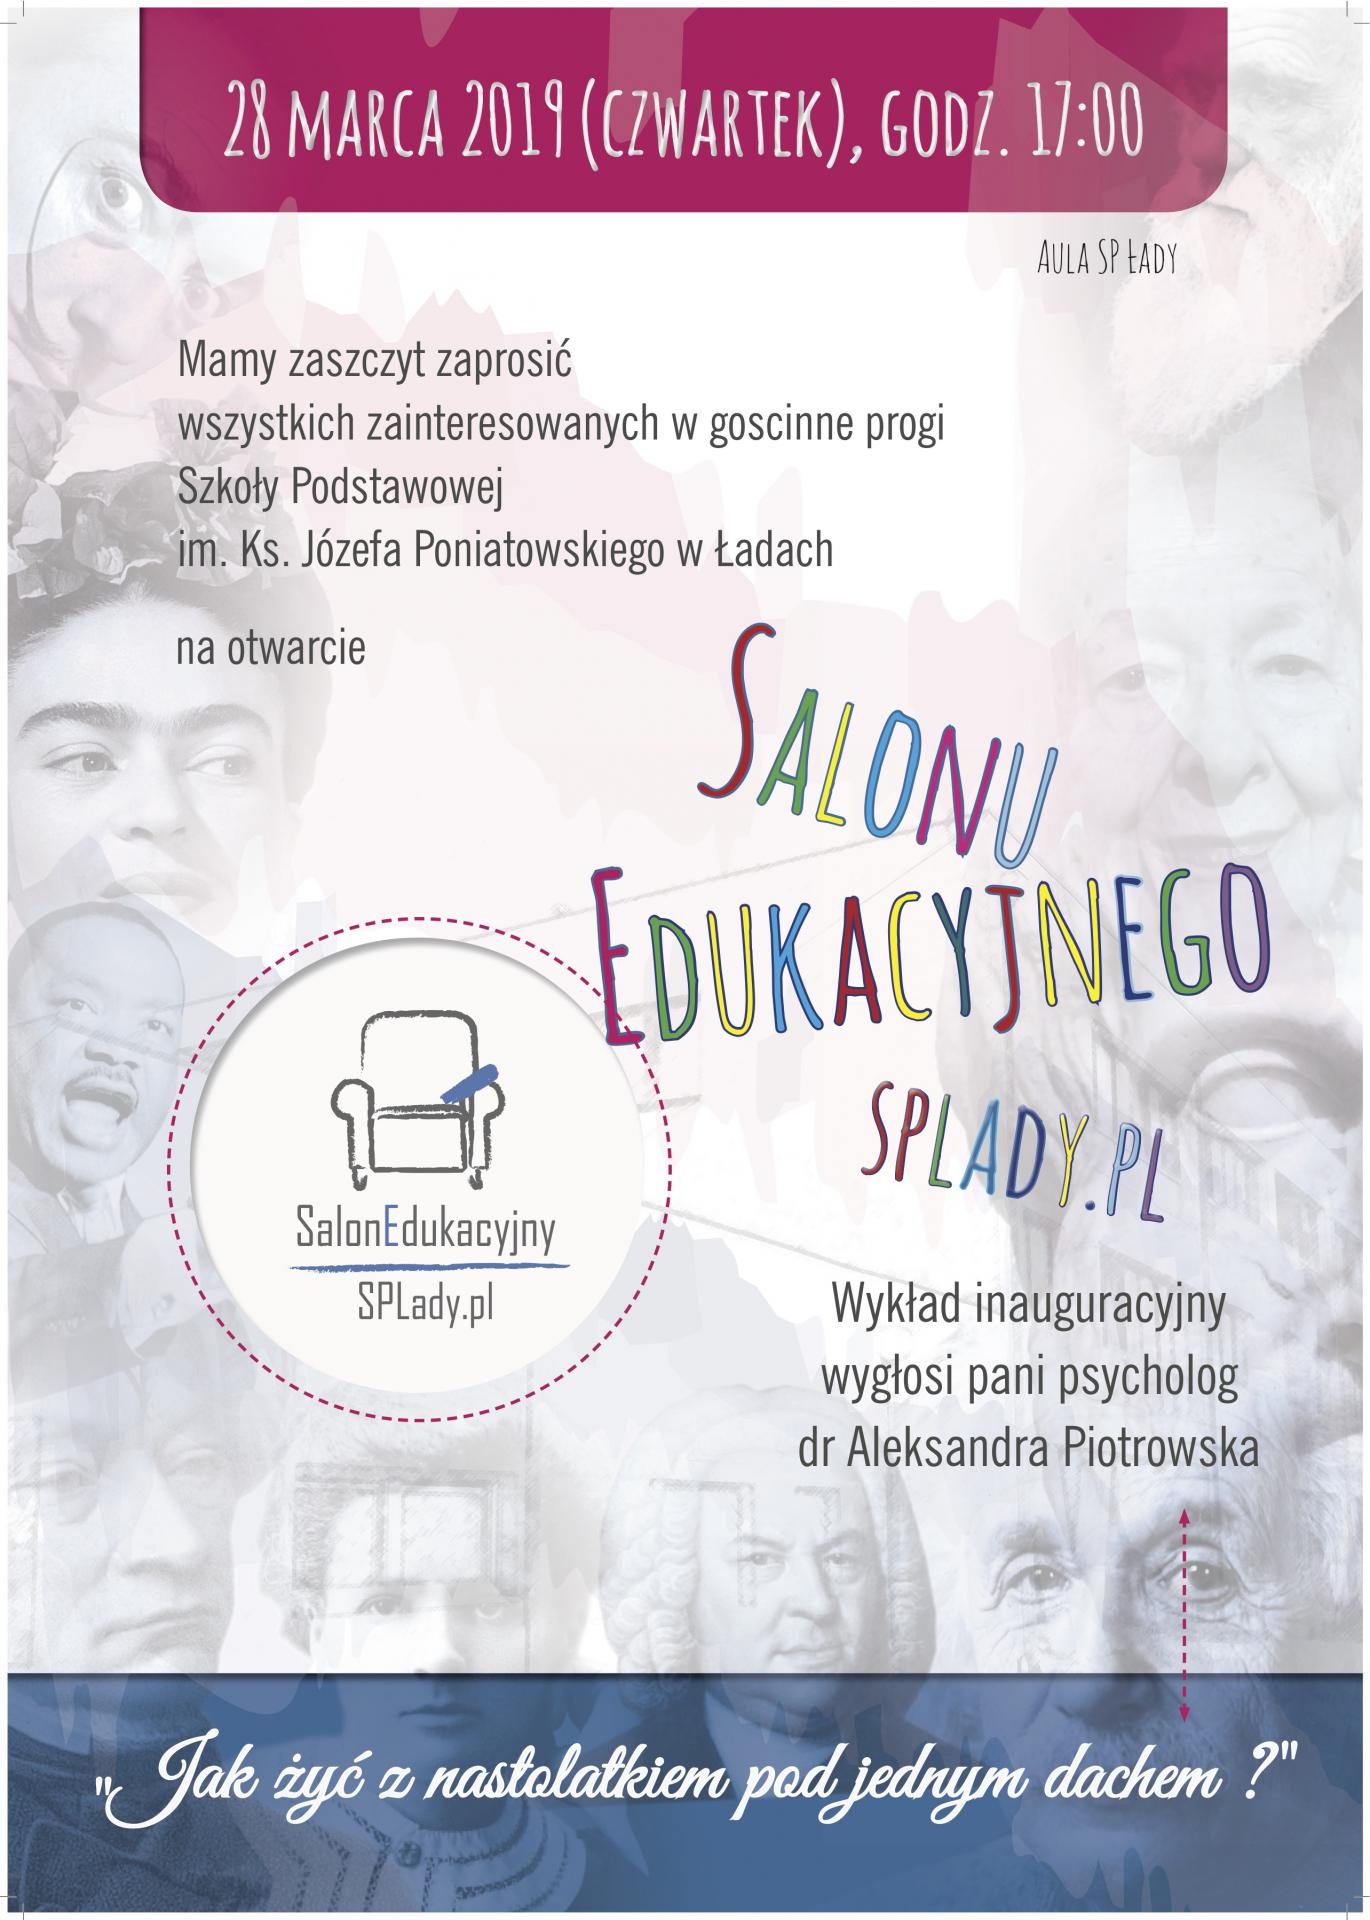 Spotkanie 1: Inauguracja działalności Salonu Edukacyjnego splady.pl